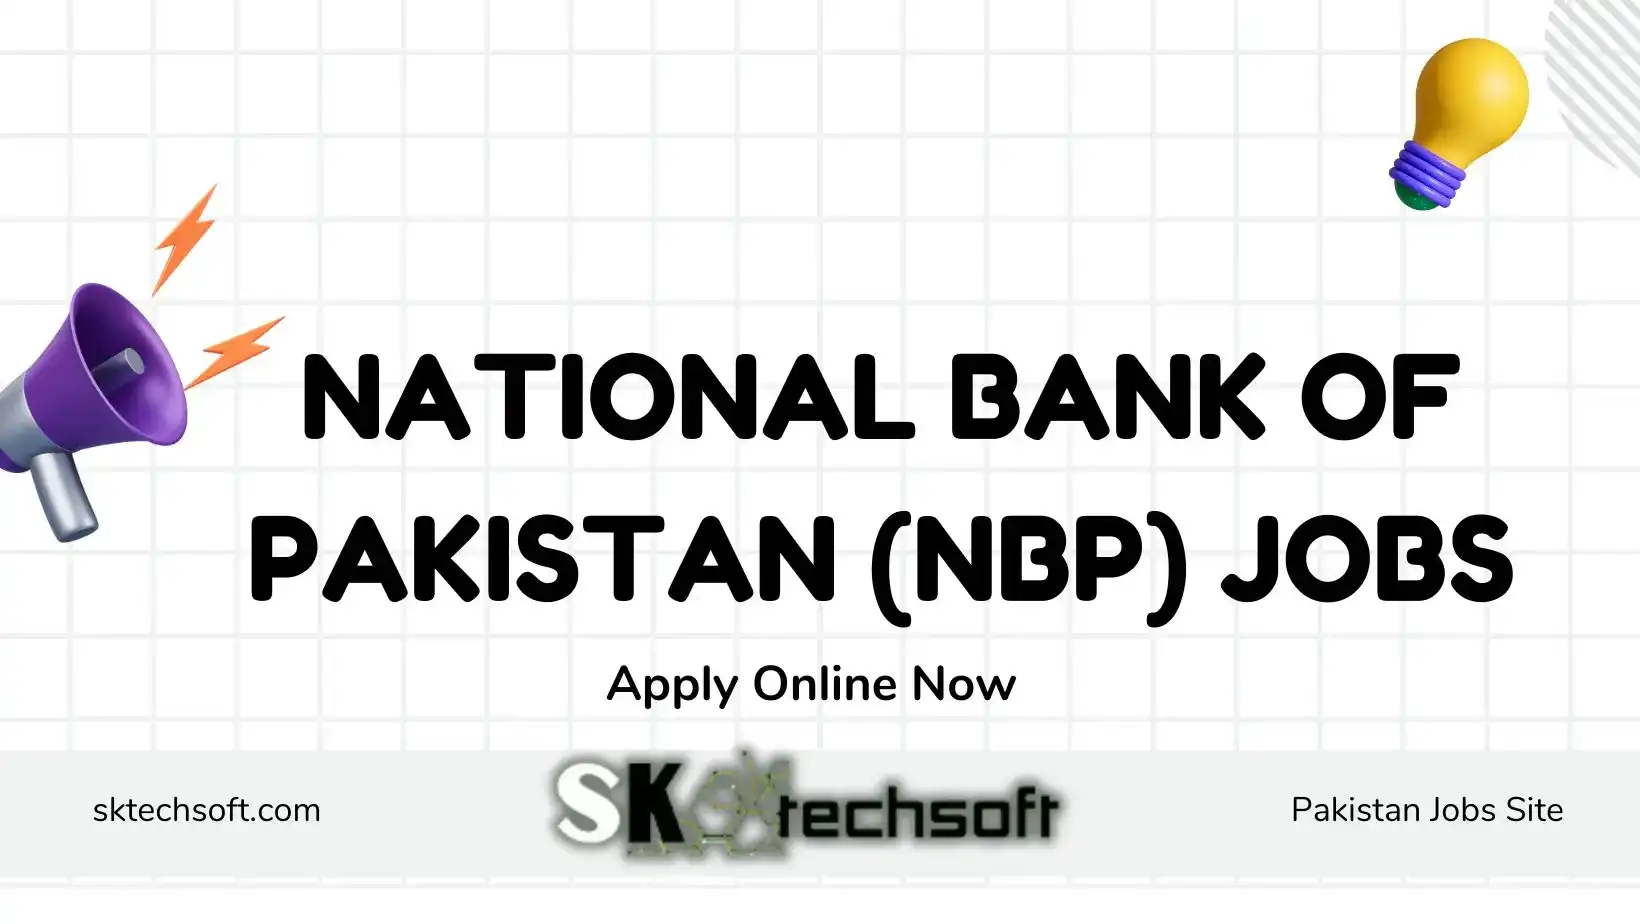 National Bank of Pakistan (NBP) Jobs